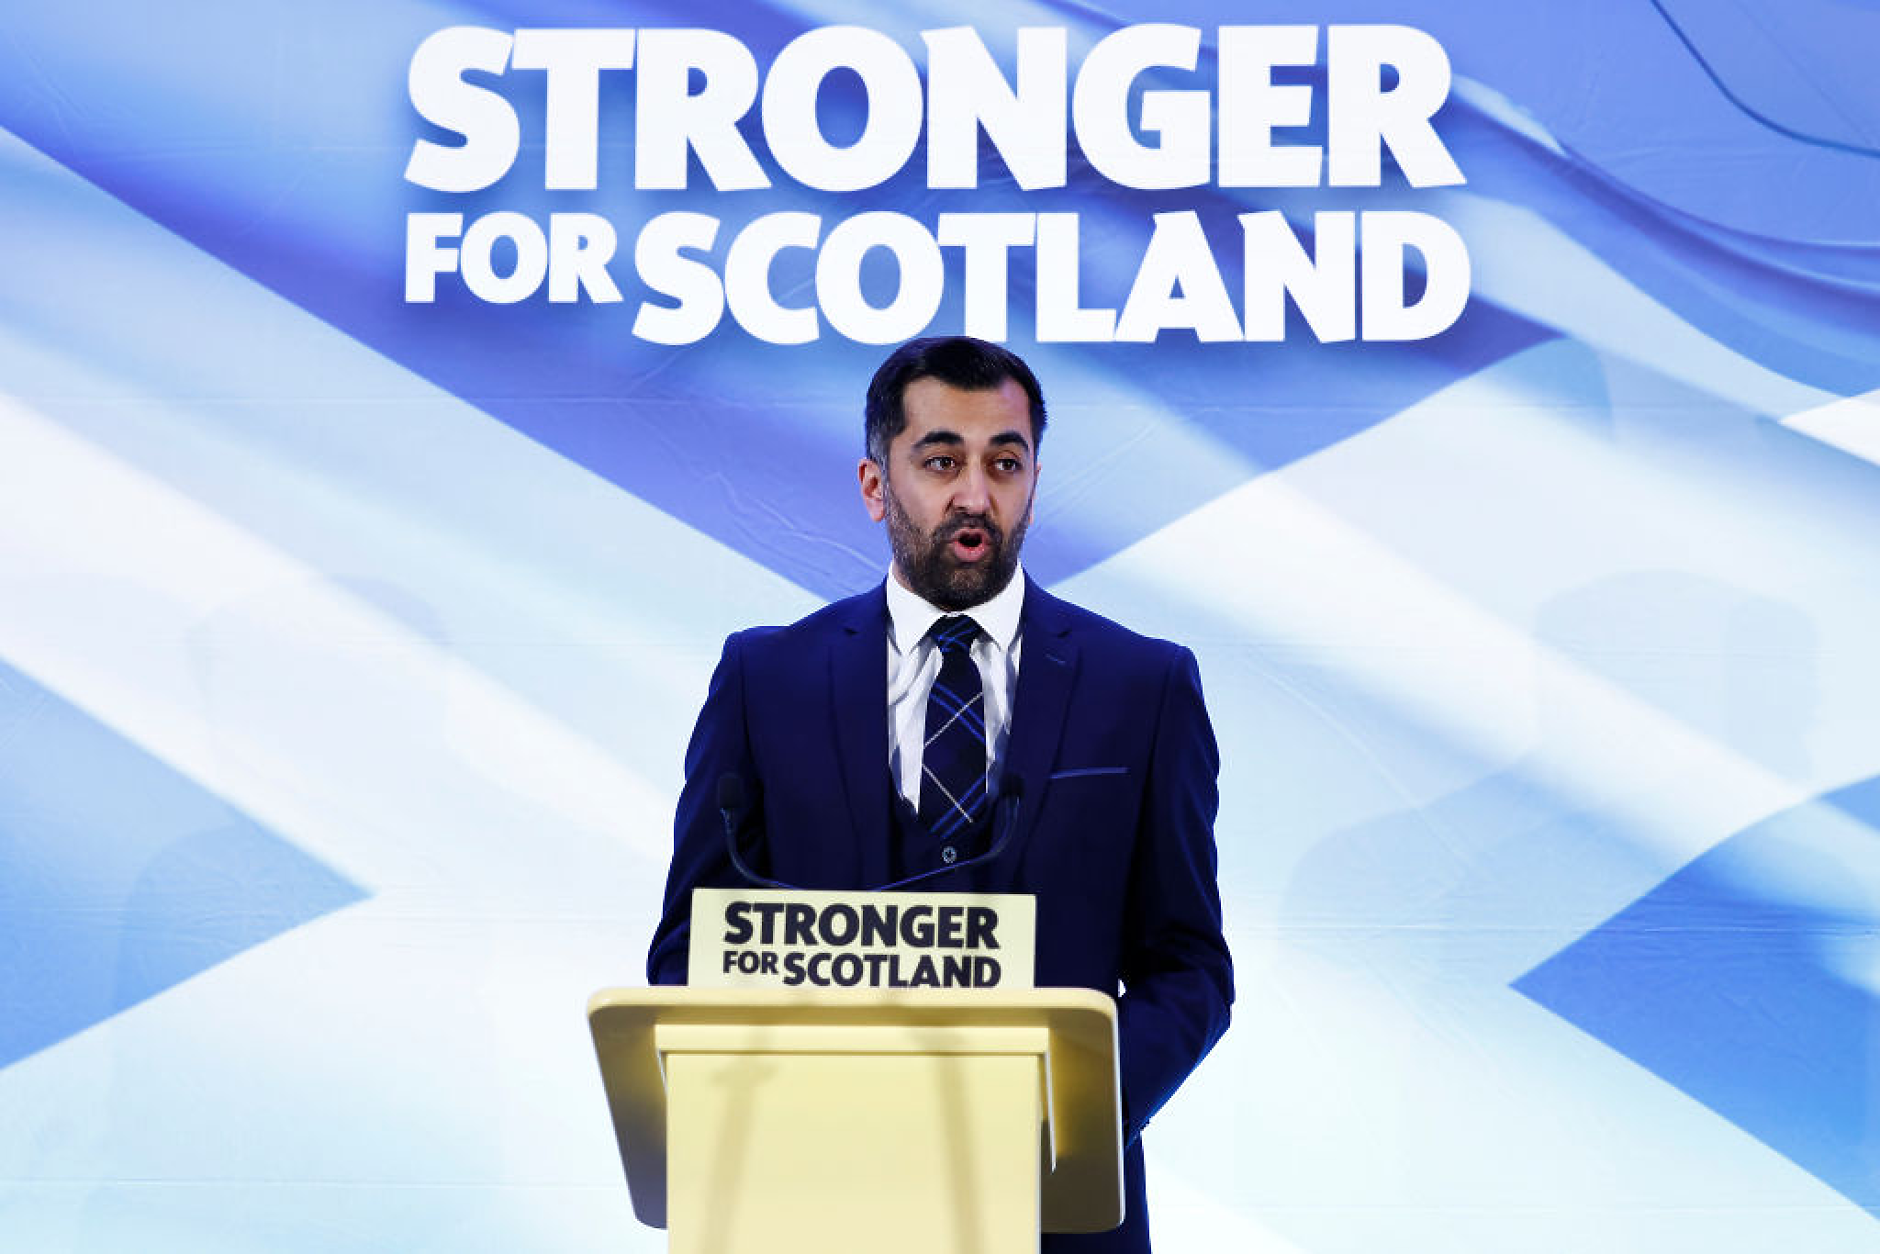 37-годишен син на имигранти поема управлението на водещата партия в Шотландия